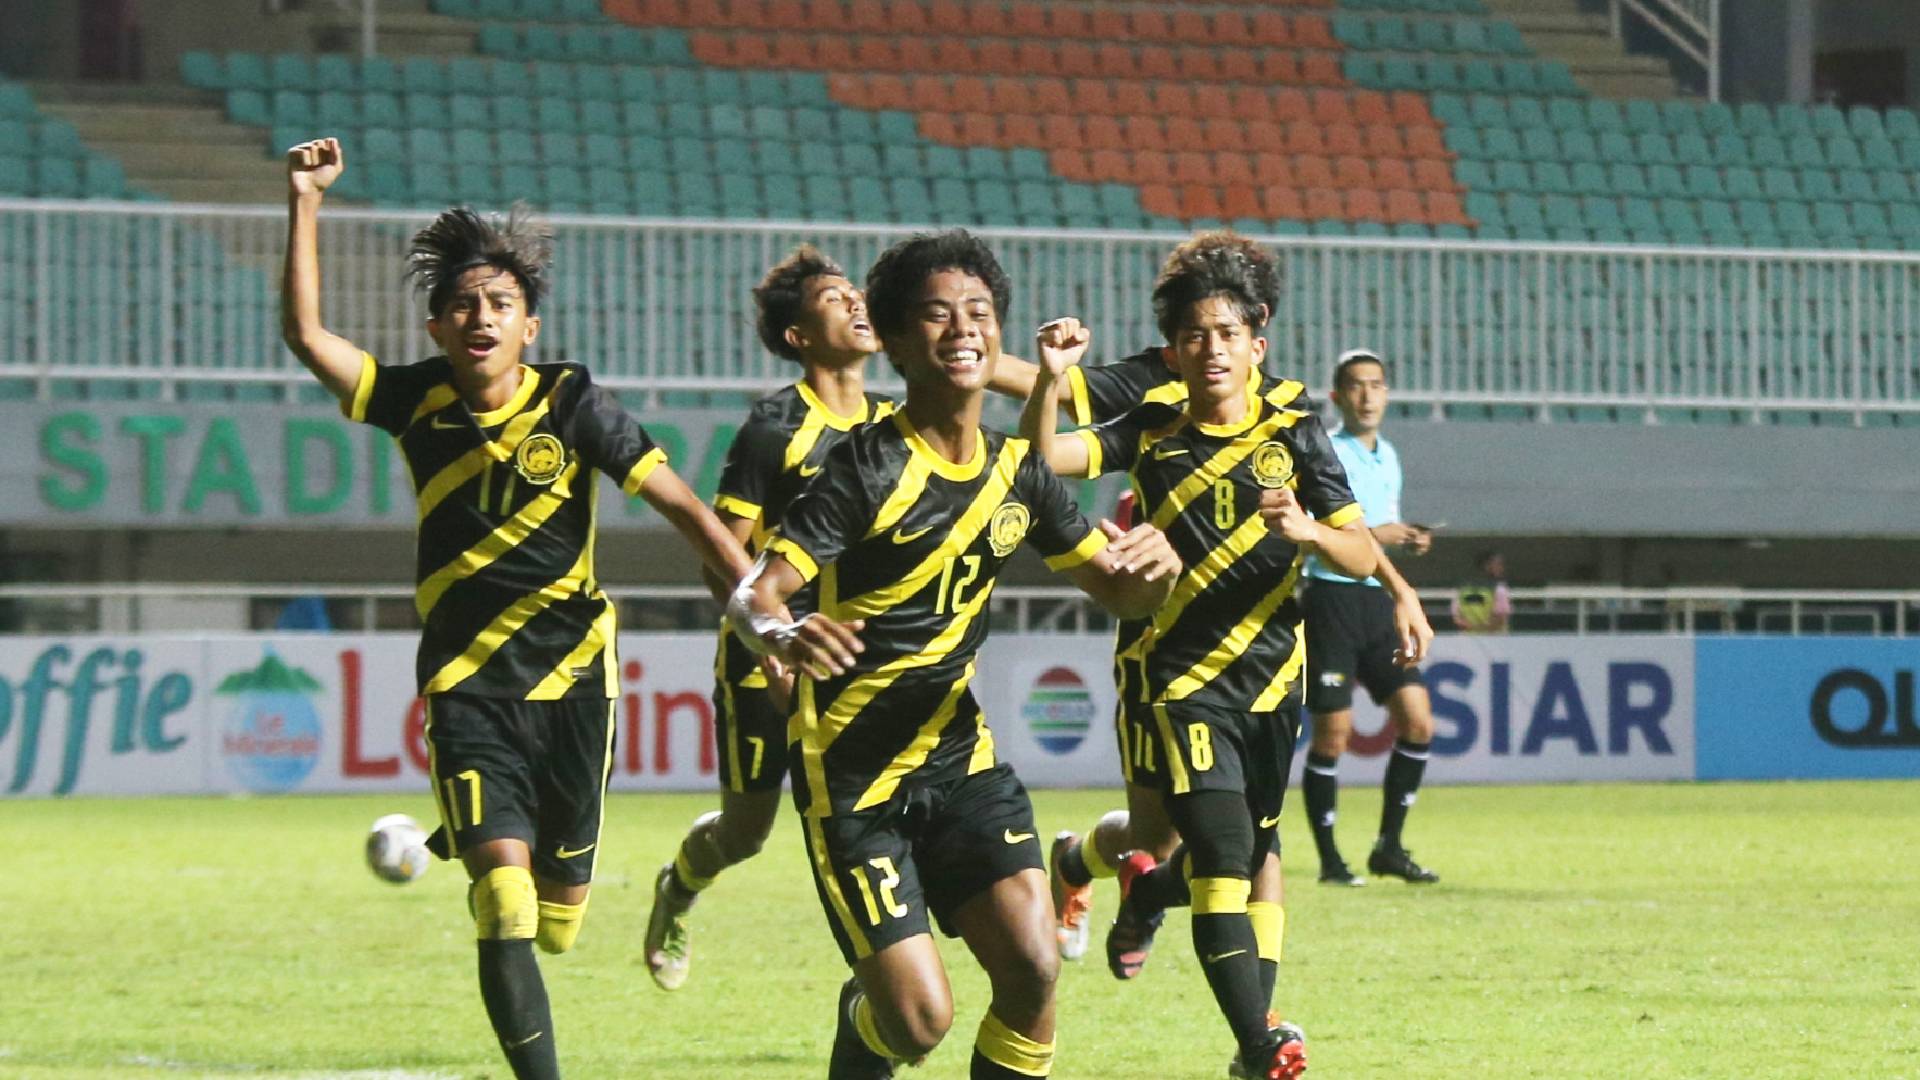 Skuad B 17 Malaysia FA Malaysia Skuad Muda Negara Sasar Ke Piala Dunia